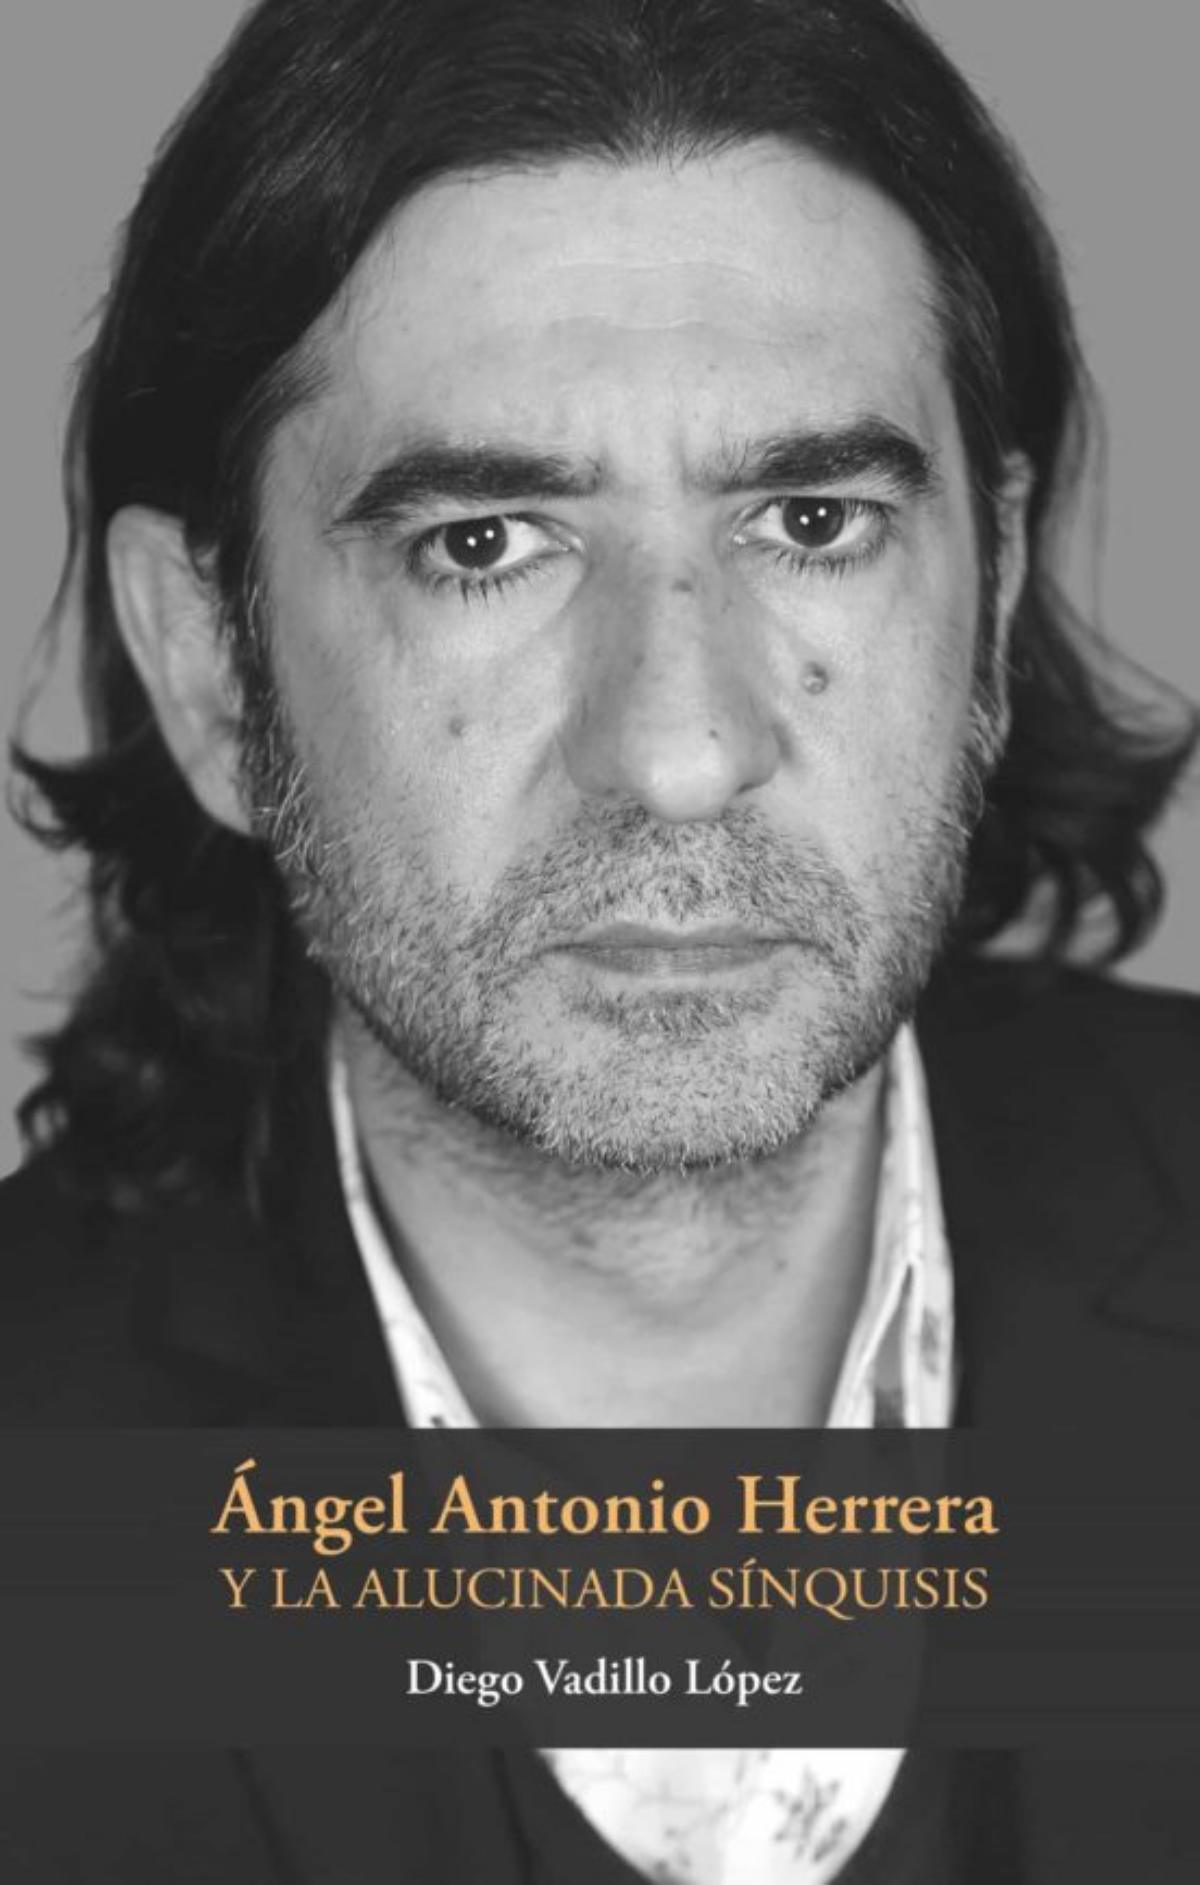 Portada del libro ‘Ángel Antonio Herrera y la alucinada sínquisis’